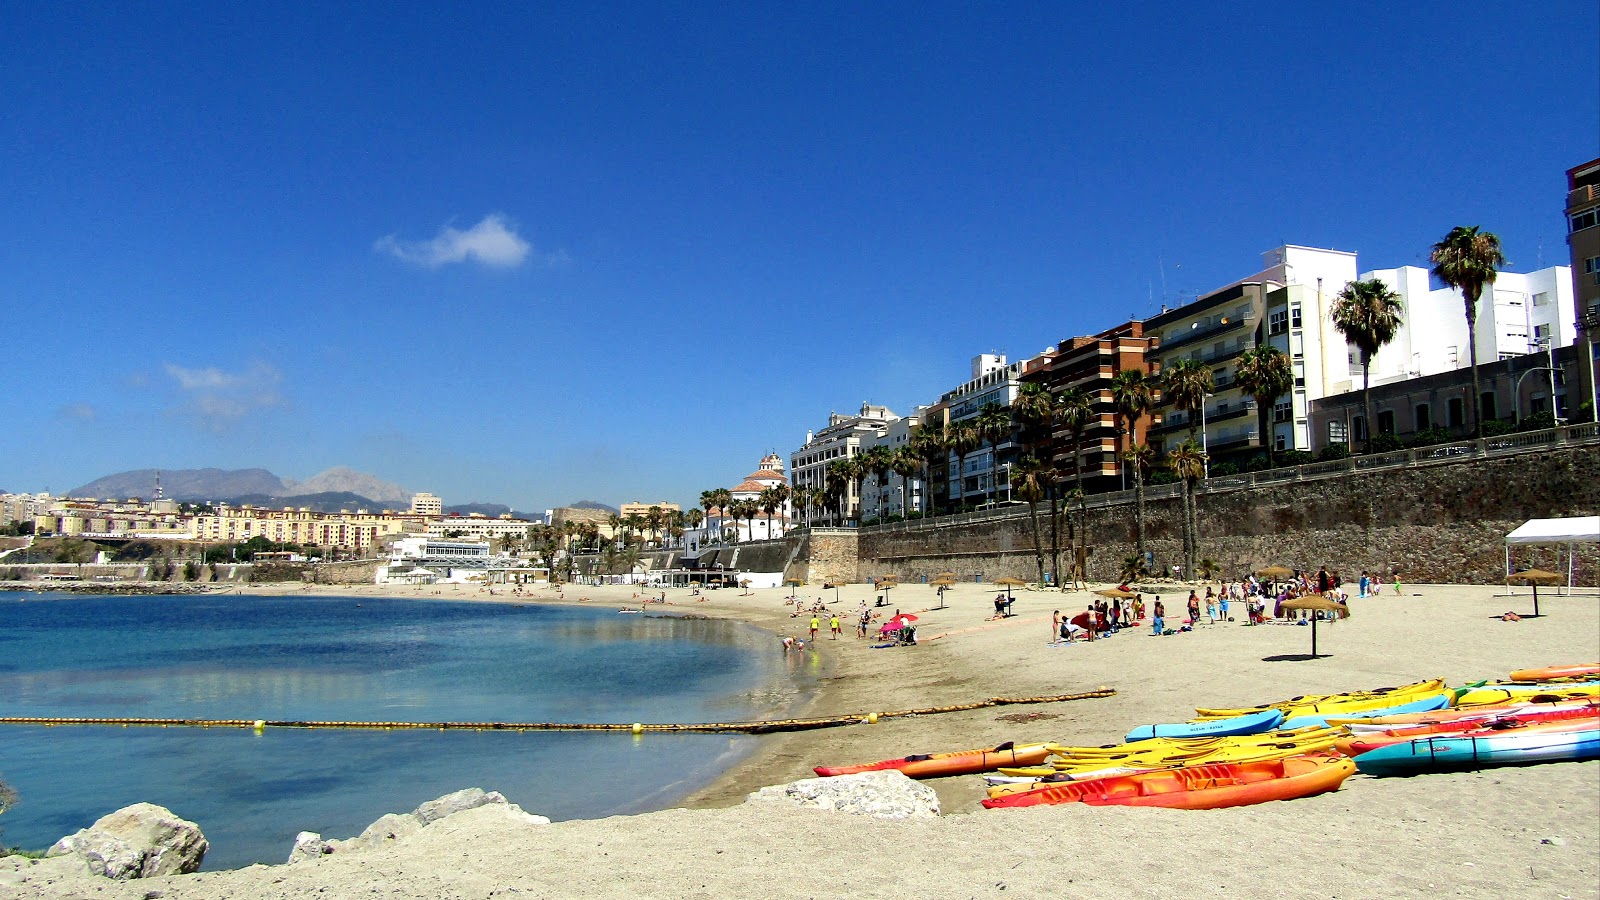 Playa de la Ribera'in fotoğrafı imkanlar alanı